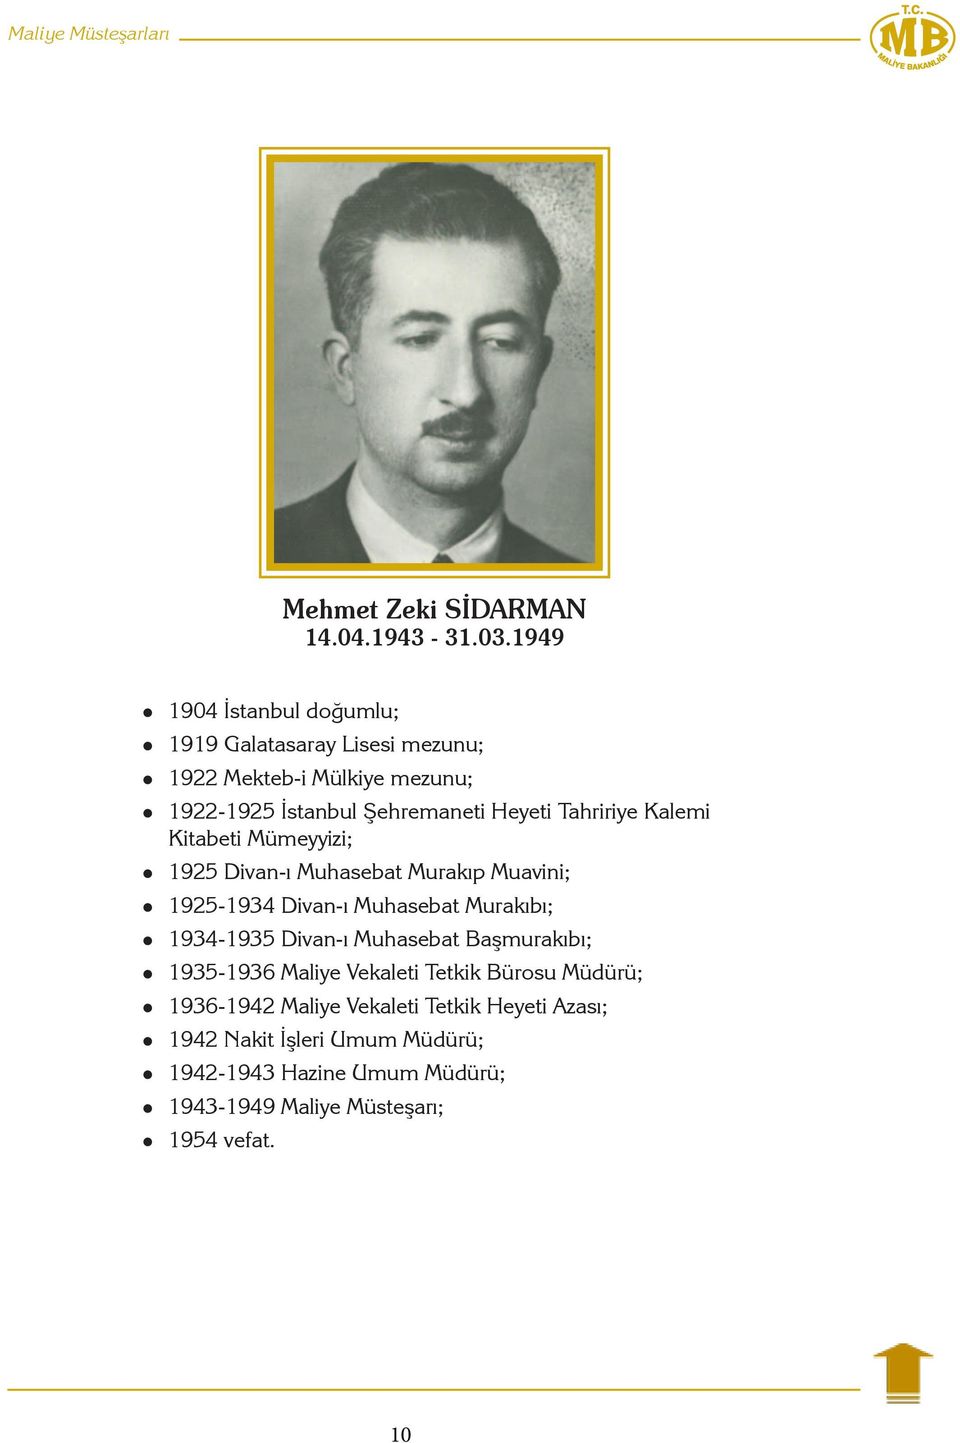 Tahririye Kalemi Kitabeti Mümeyyizi; 1925 Divan-ı Muhasebat Murakıp Muavini; 1925-1934 Divan-ı Muhasebat Murakıbı; 1934-1935 Divan-ı